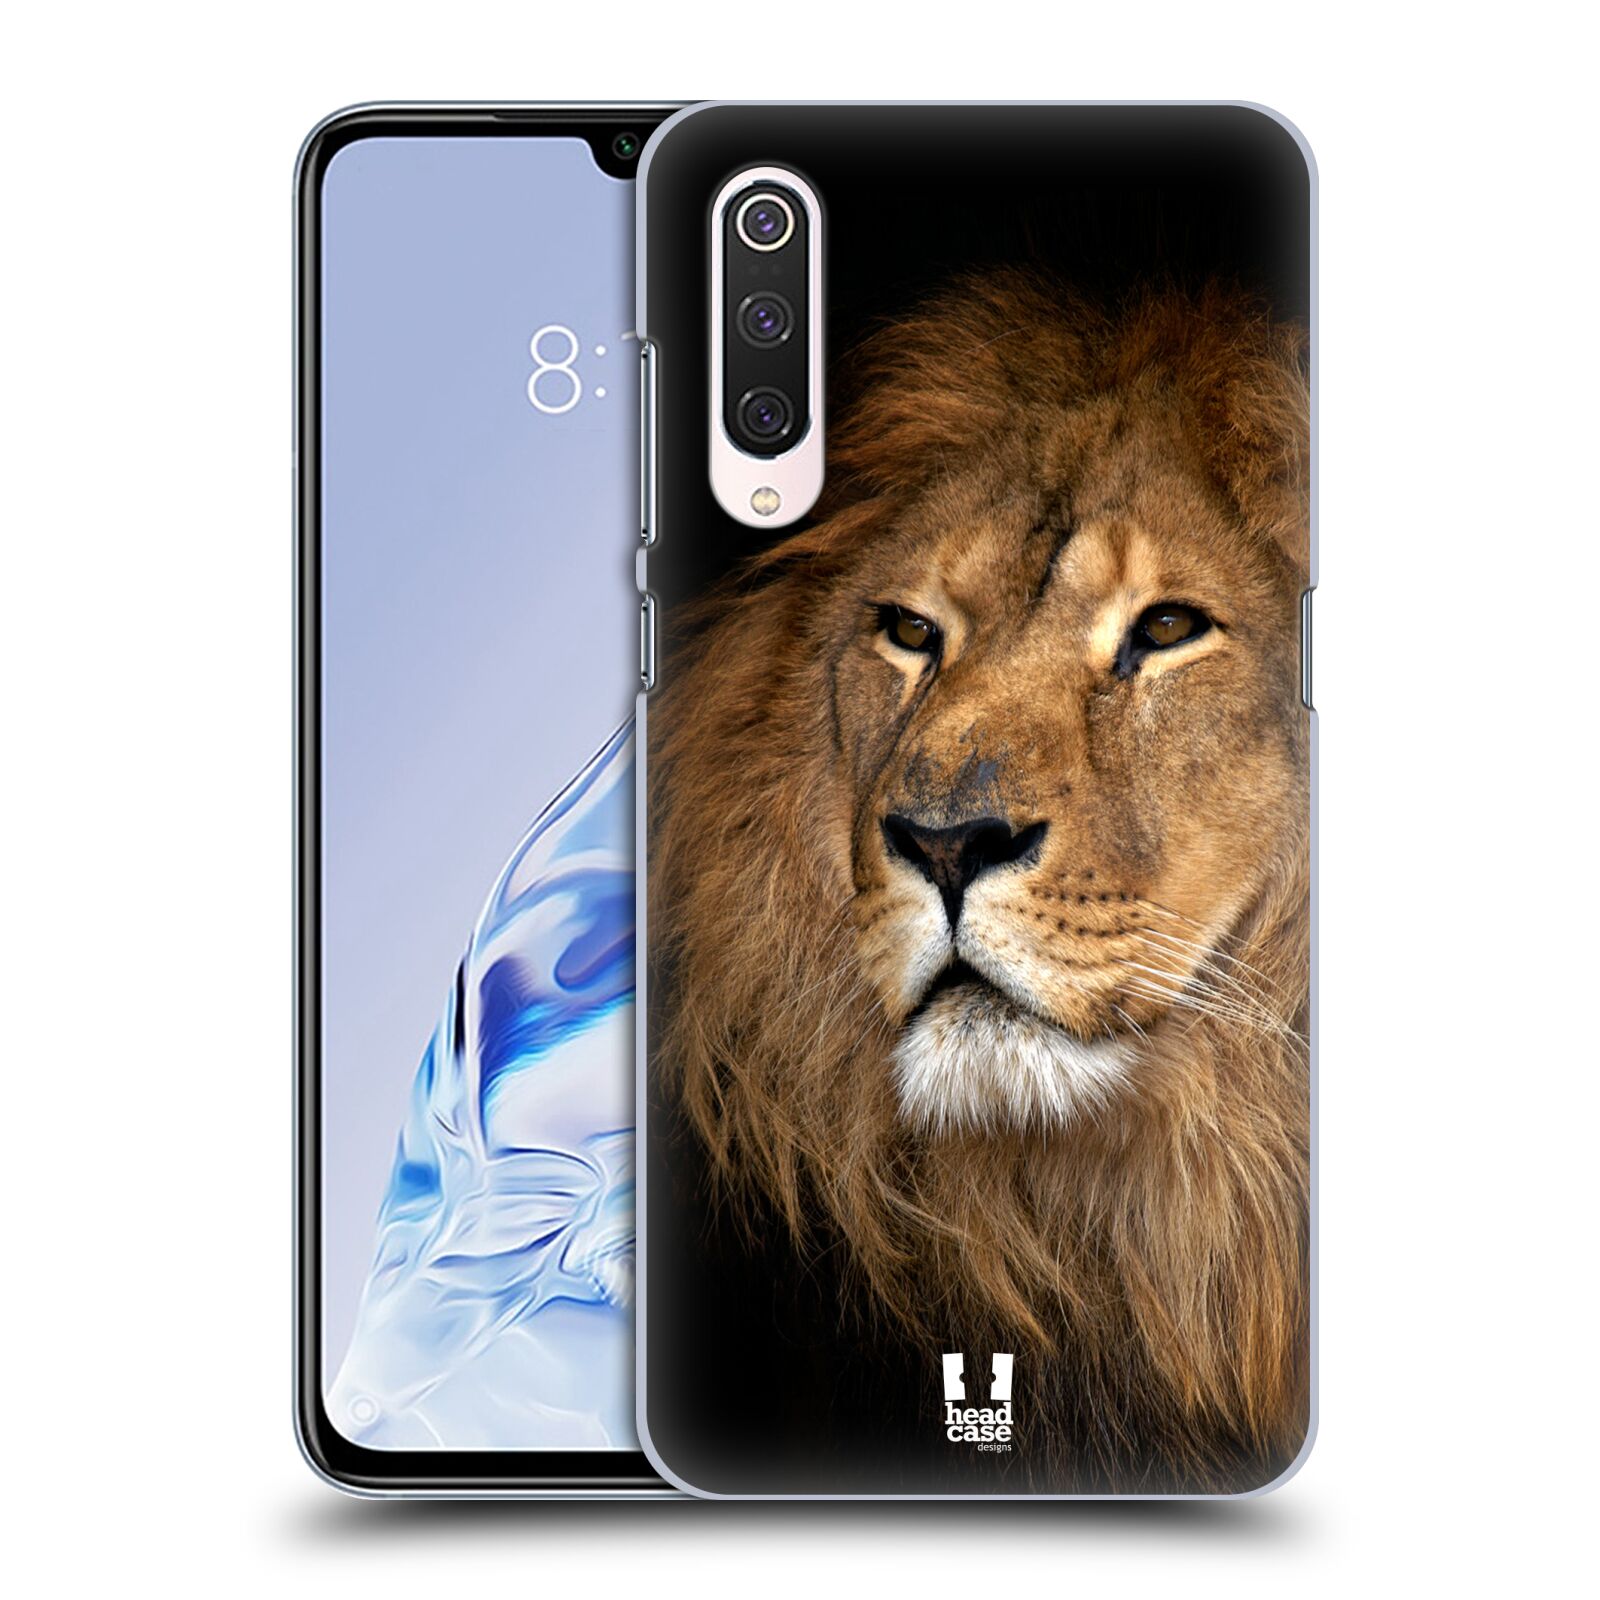 Zadní obal pro mobil Xiaomi Mi 9 PRO - HEAD CASE - Svět zvířat král zvířat Lev